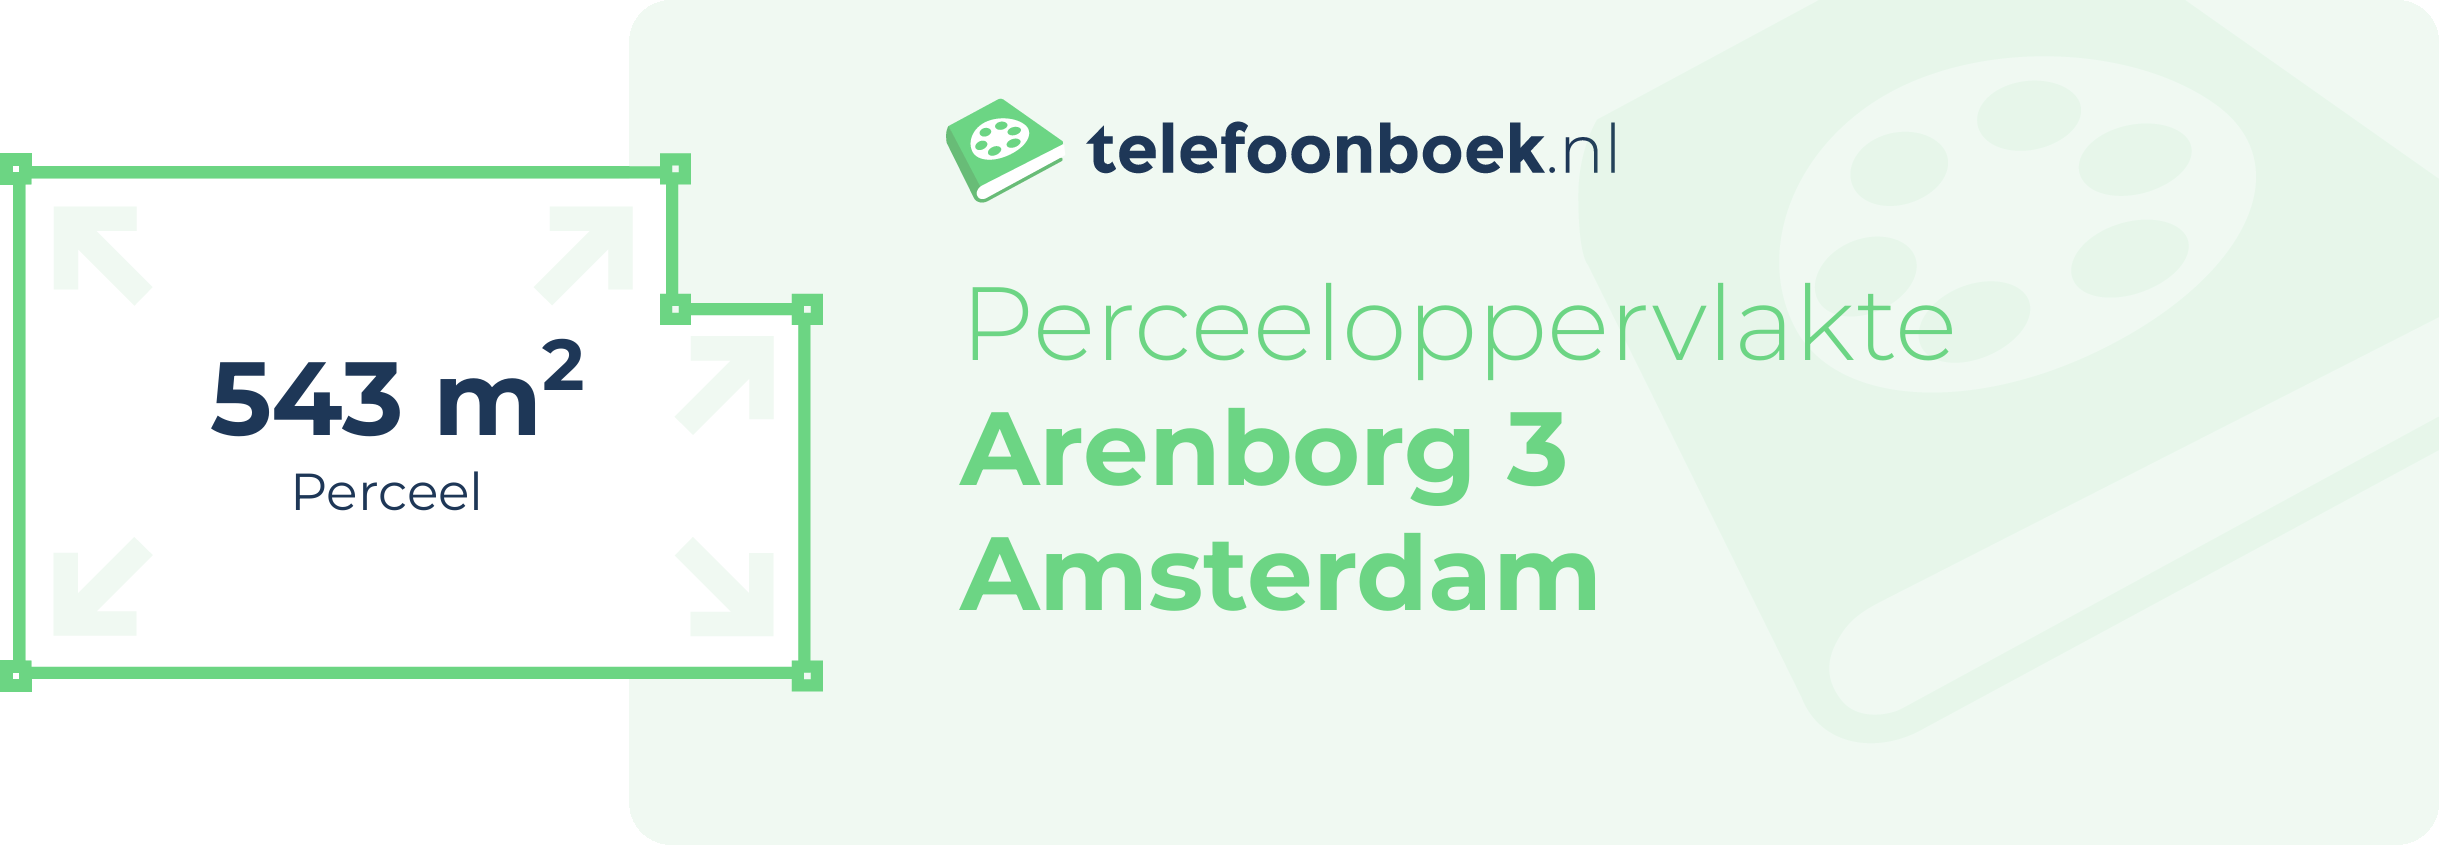 Perceeloppervlakte Arenborg 3 Amsterdam